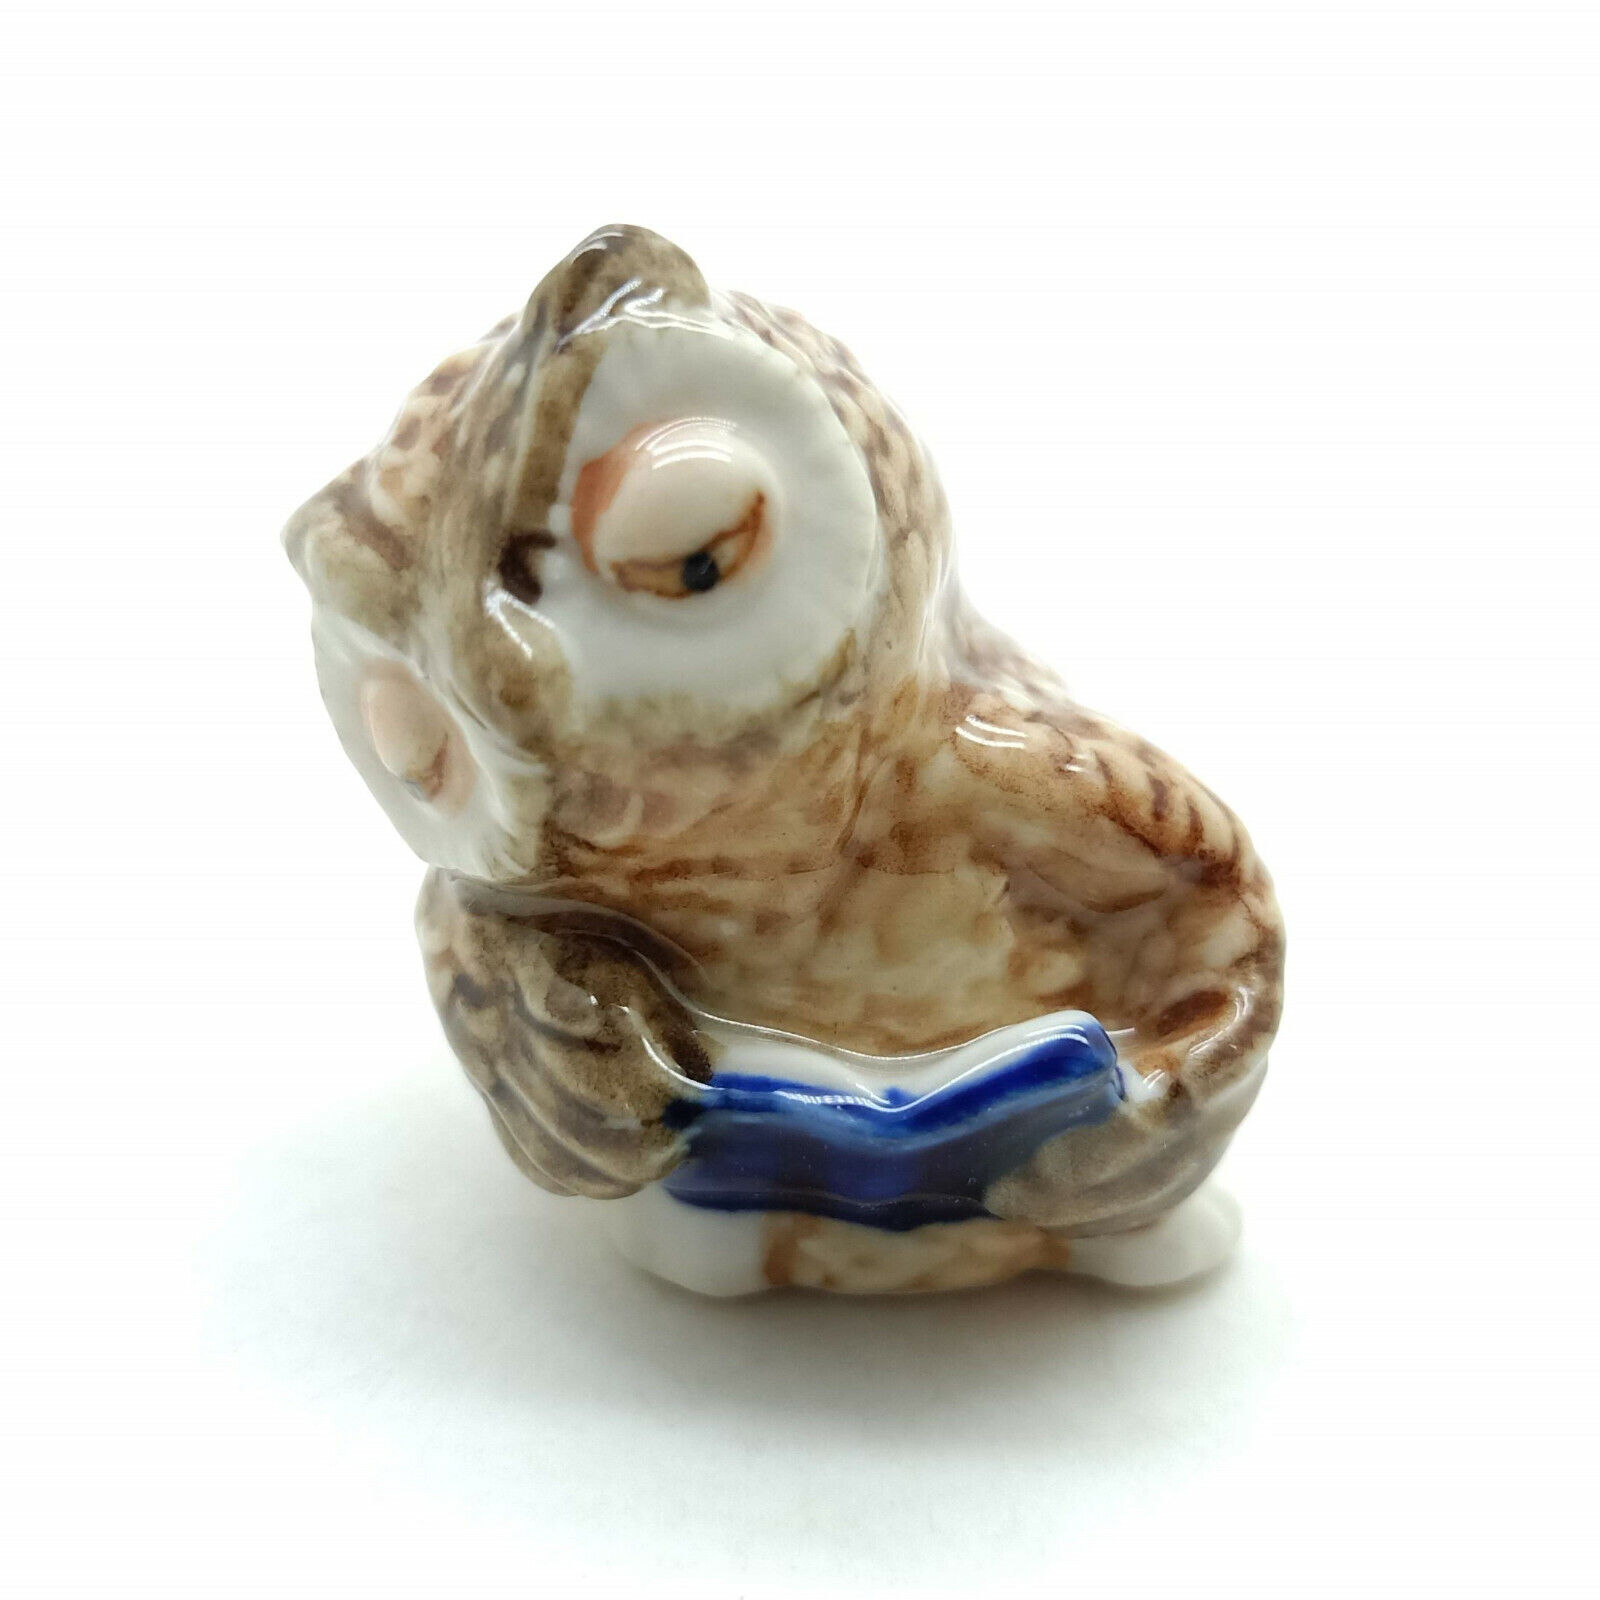 Owl Reading Book Ceramic Figurine Charming Decor for Bookworms & Owl Aficionados